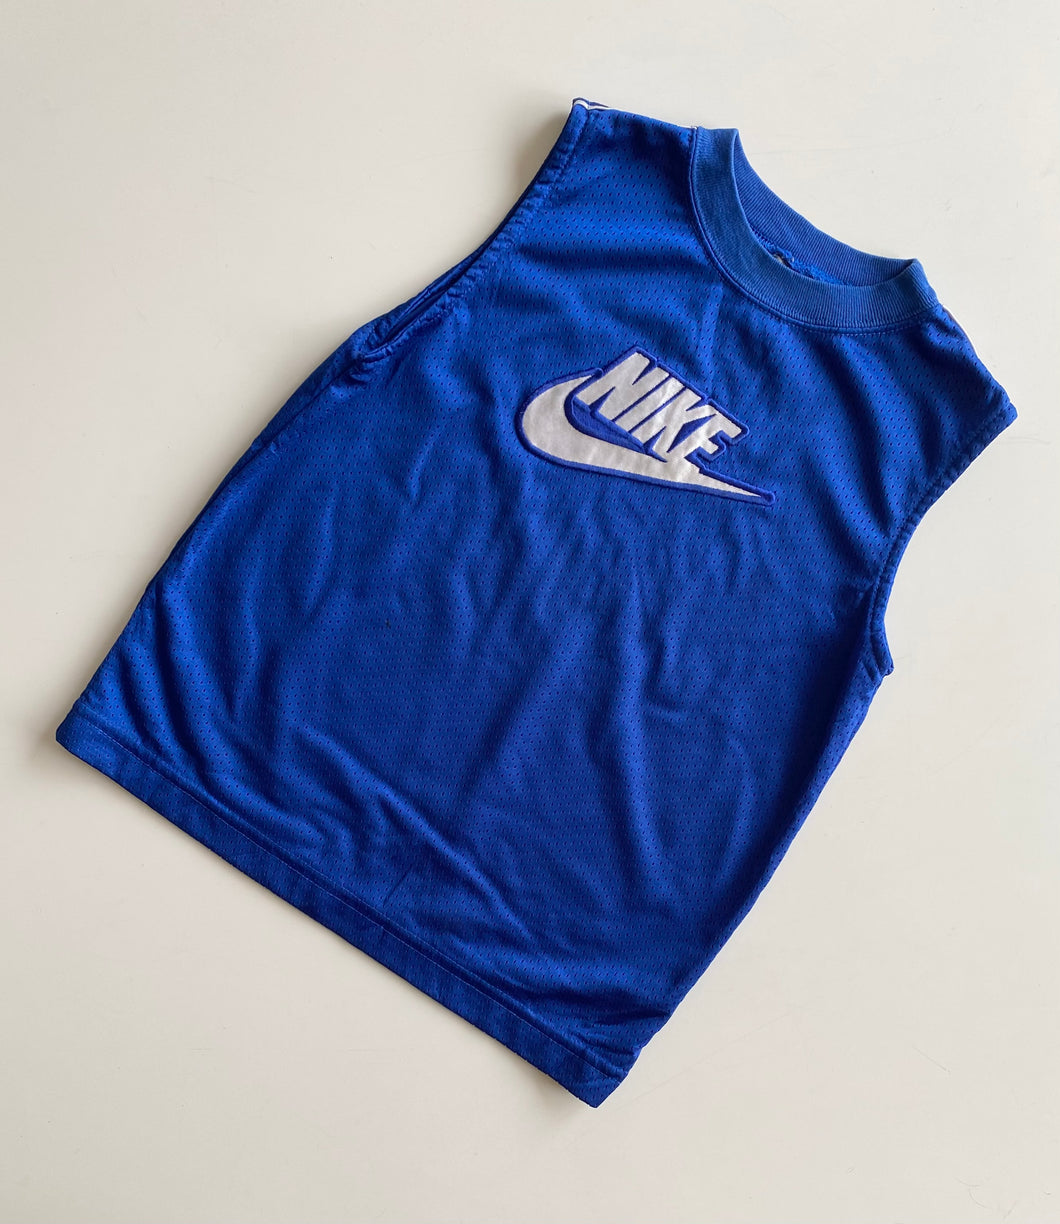 90s Nike vest (Age 7)